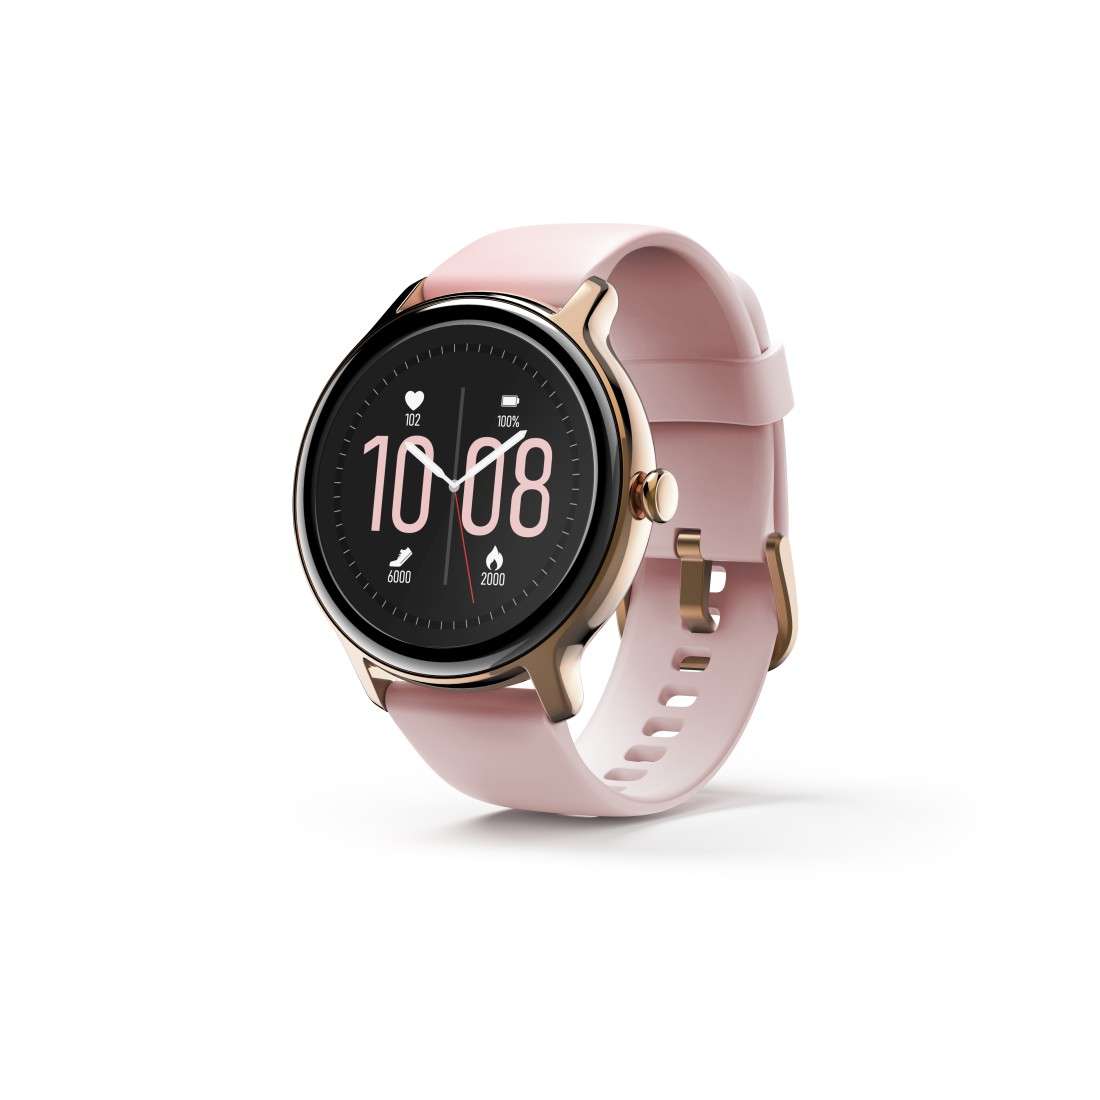 HAMA Smartwatch Fit Watch 4910, wasserdicht, Herzfrequenz, Blutsauerstoff, Rs